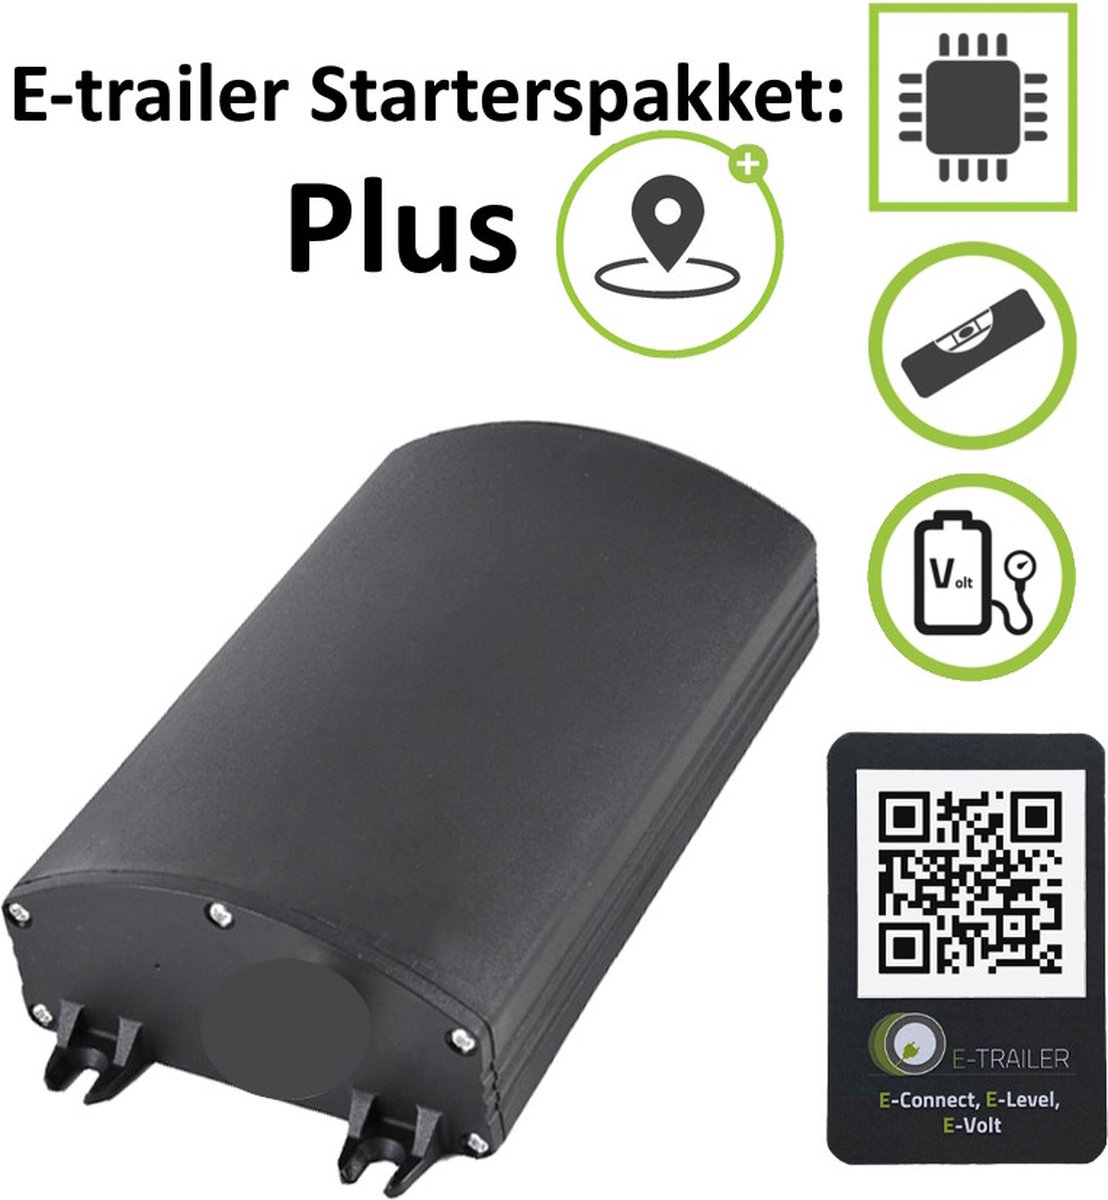 E-Trailer Starterspakket Plus